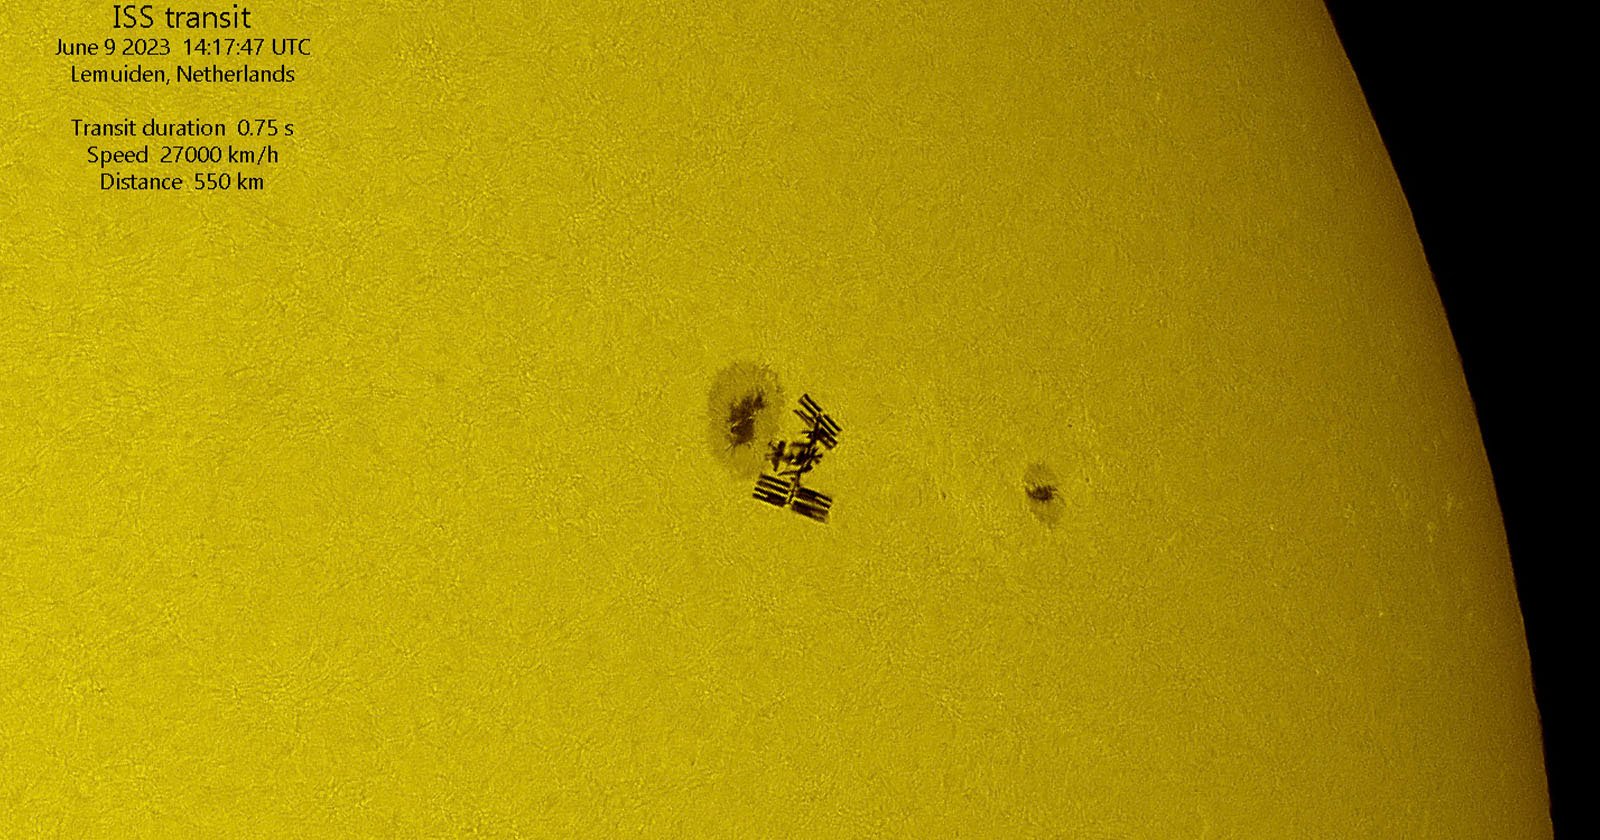 カメラマンは、宇宙飛行士の宇宙遊泳中に太陽を渡るISSをキャプチャします。